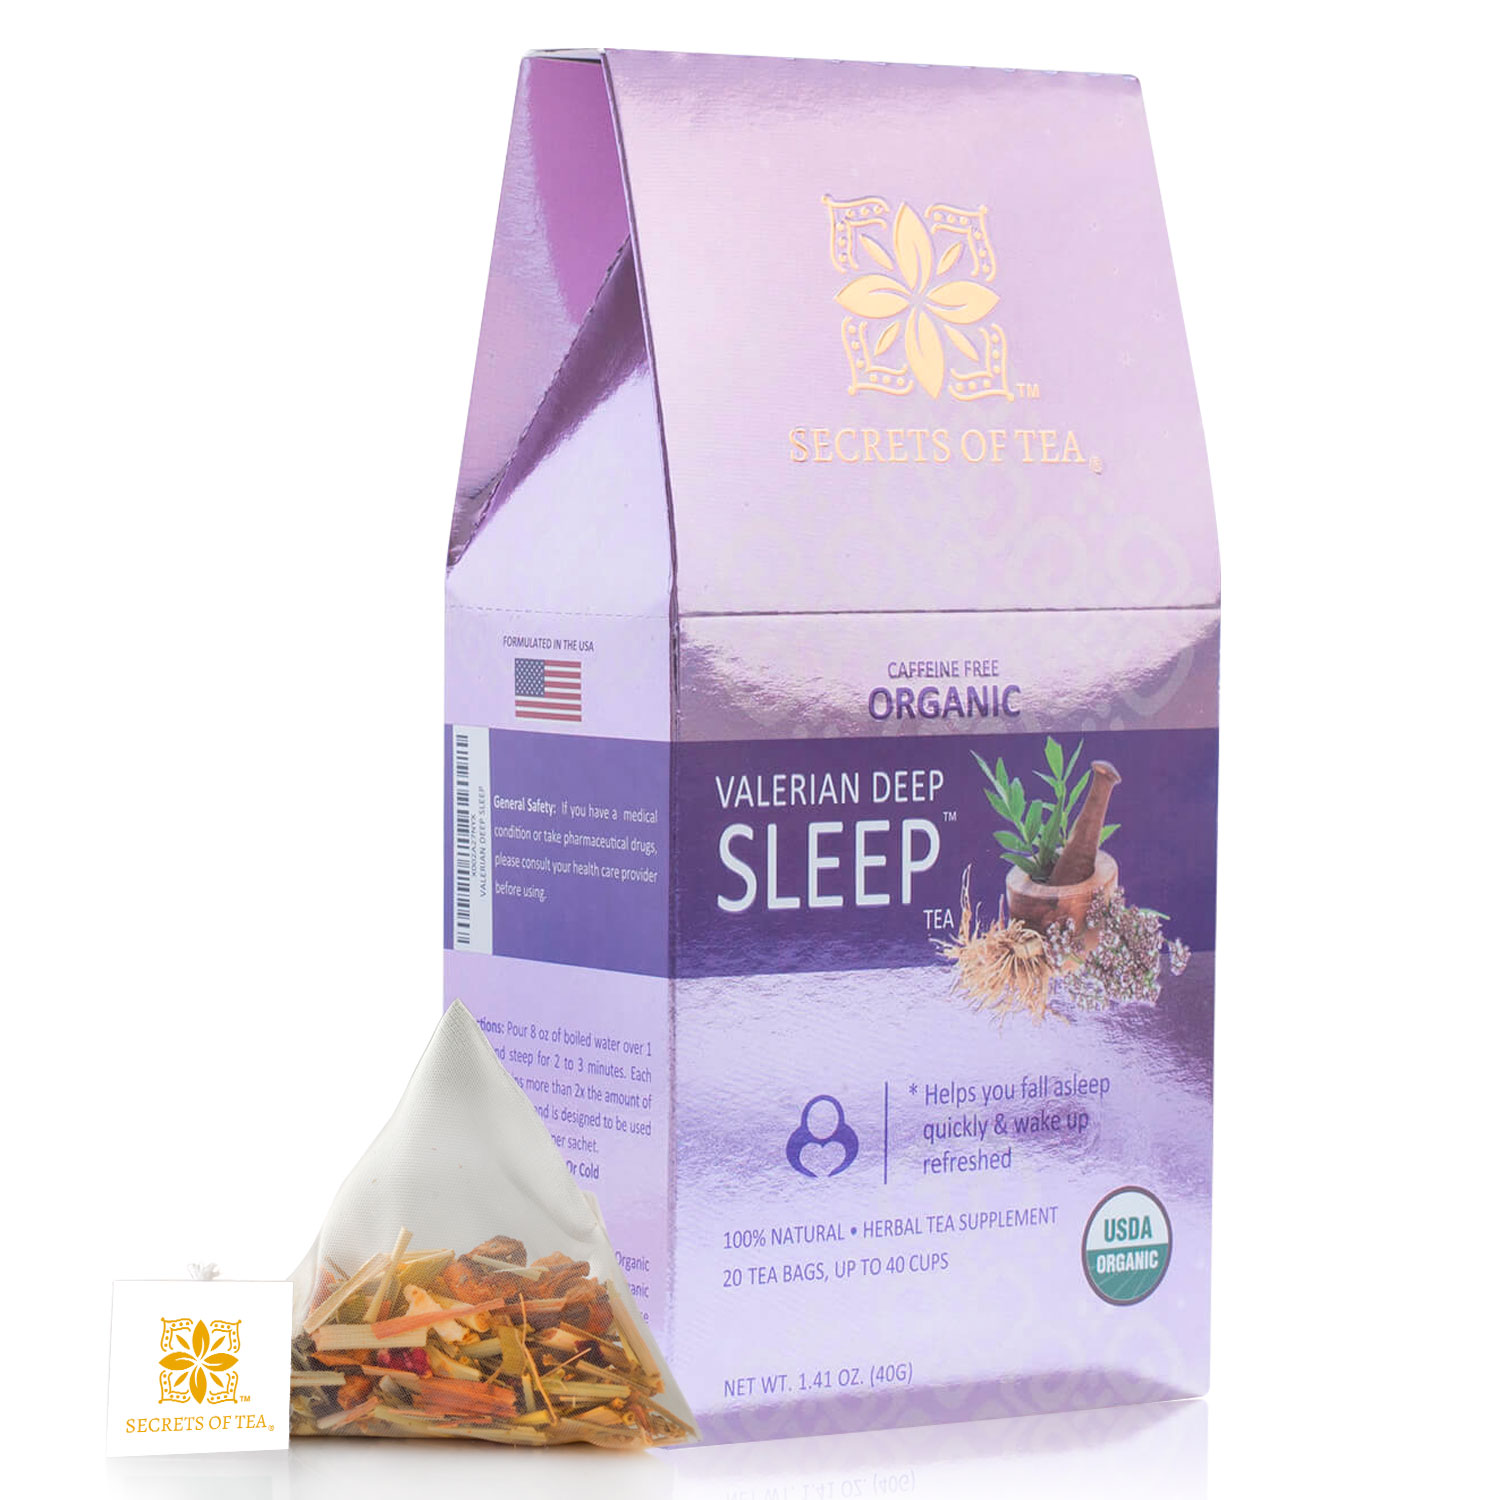 Secrets of Tea Valerian Deep Sleep Tea 2 innerpacks per case 2.0 oz